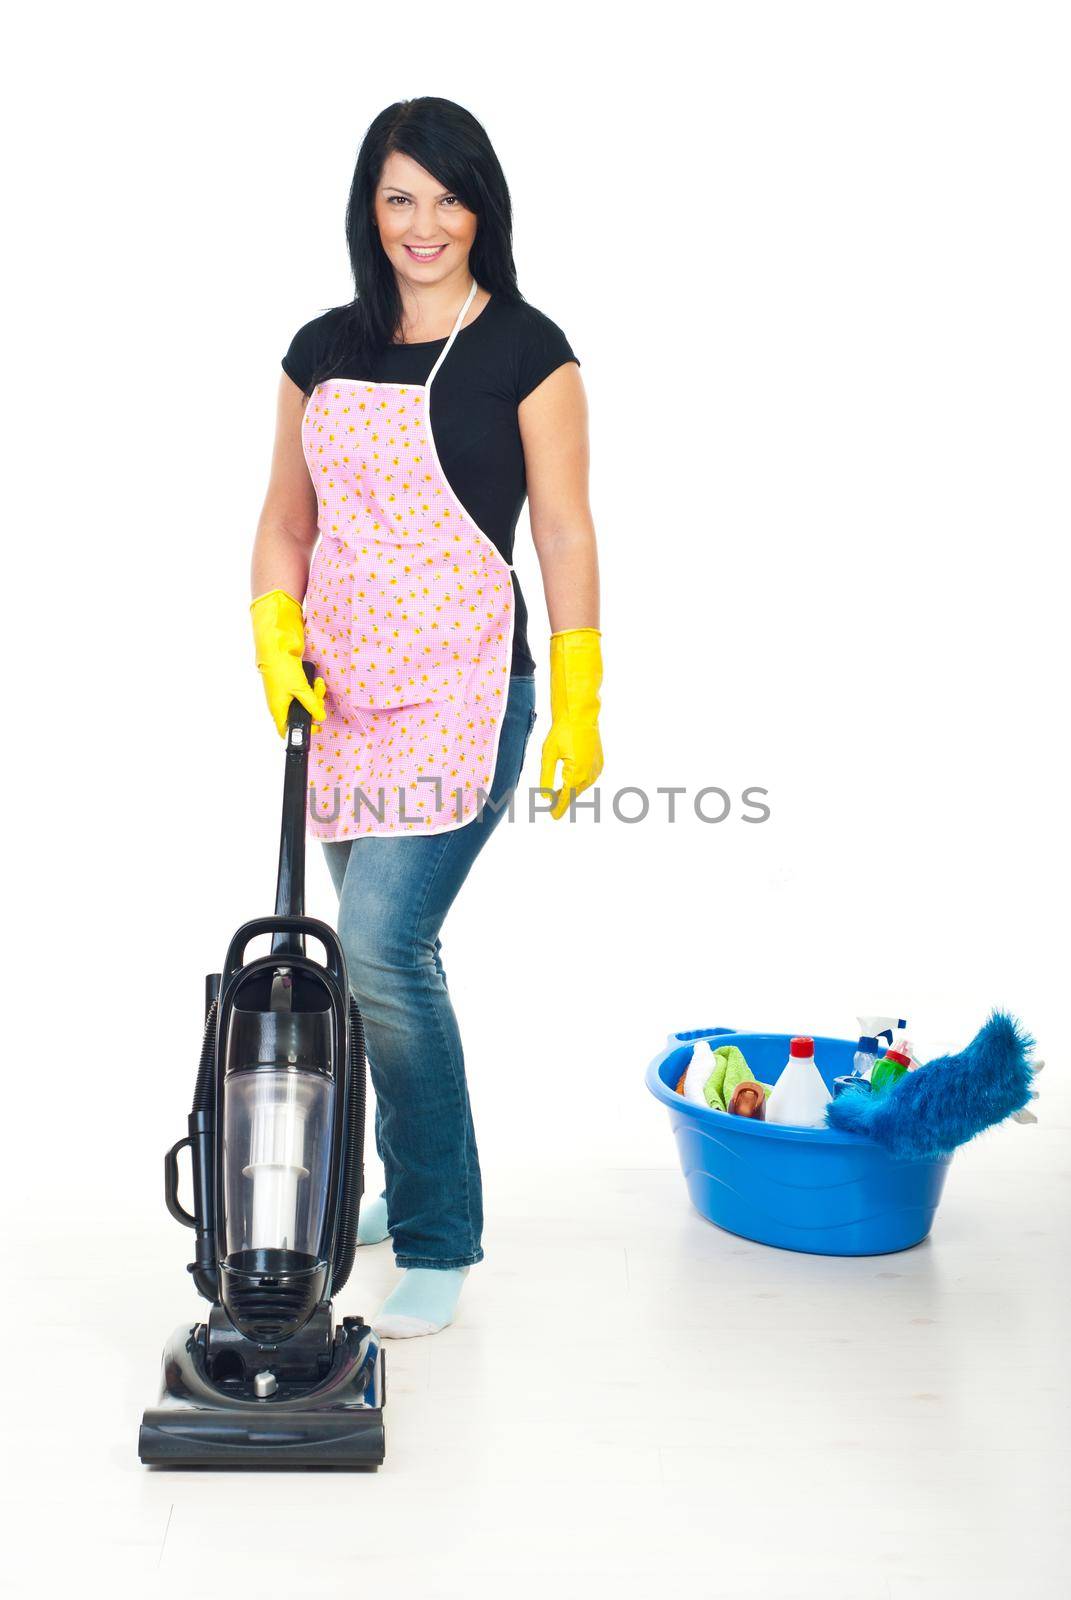 Cute woman using vacuum cleaner by justmeyo